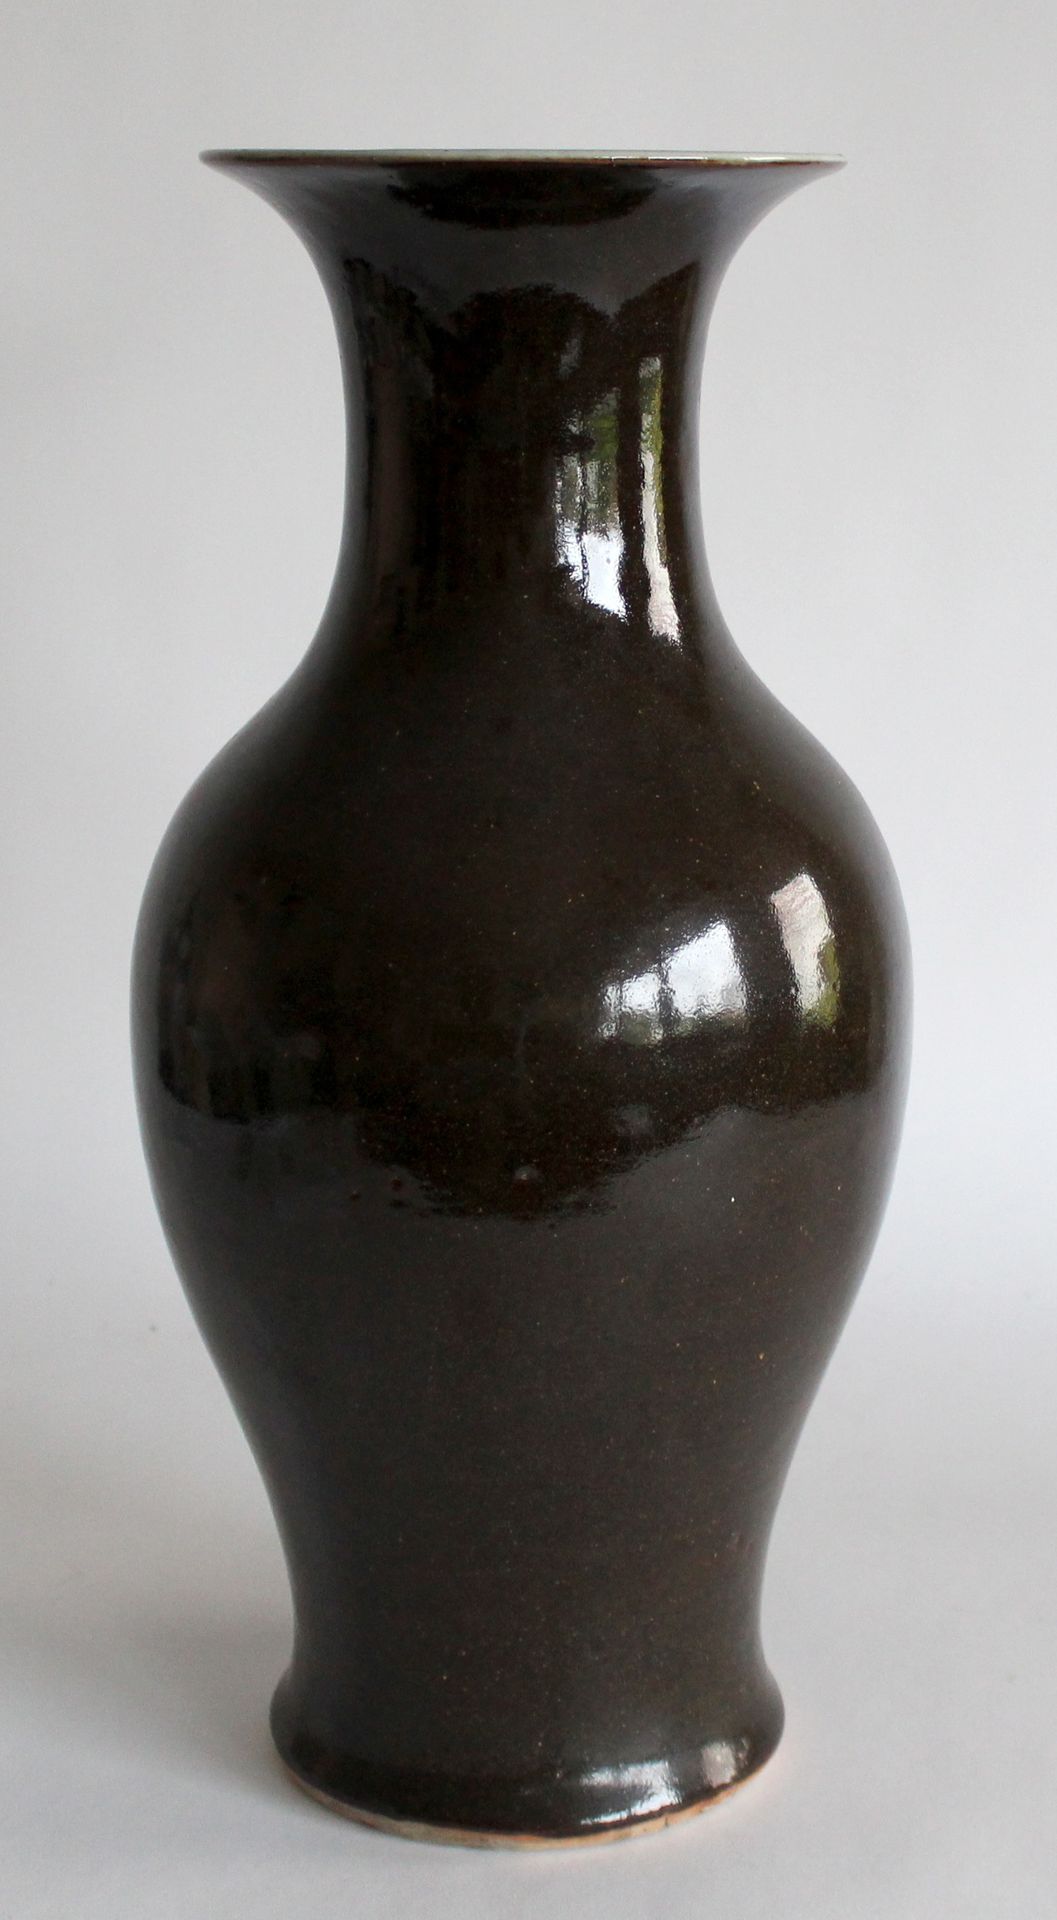 Null 中国。棕色的粉彩瓷器柱形花瓶。高46厘米